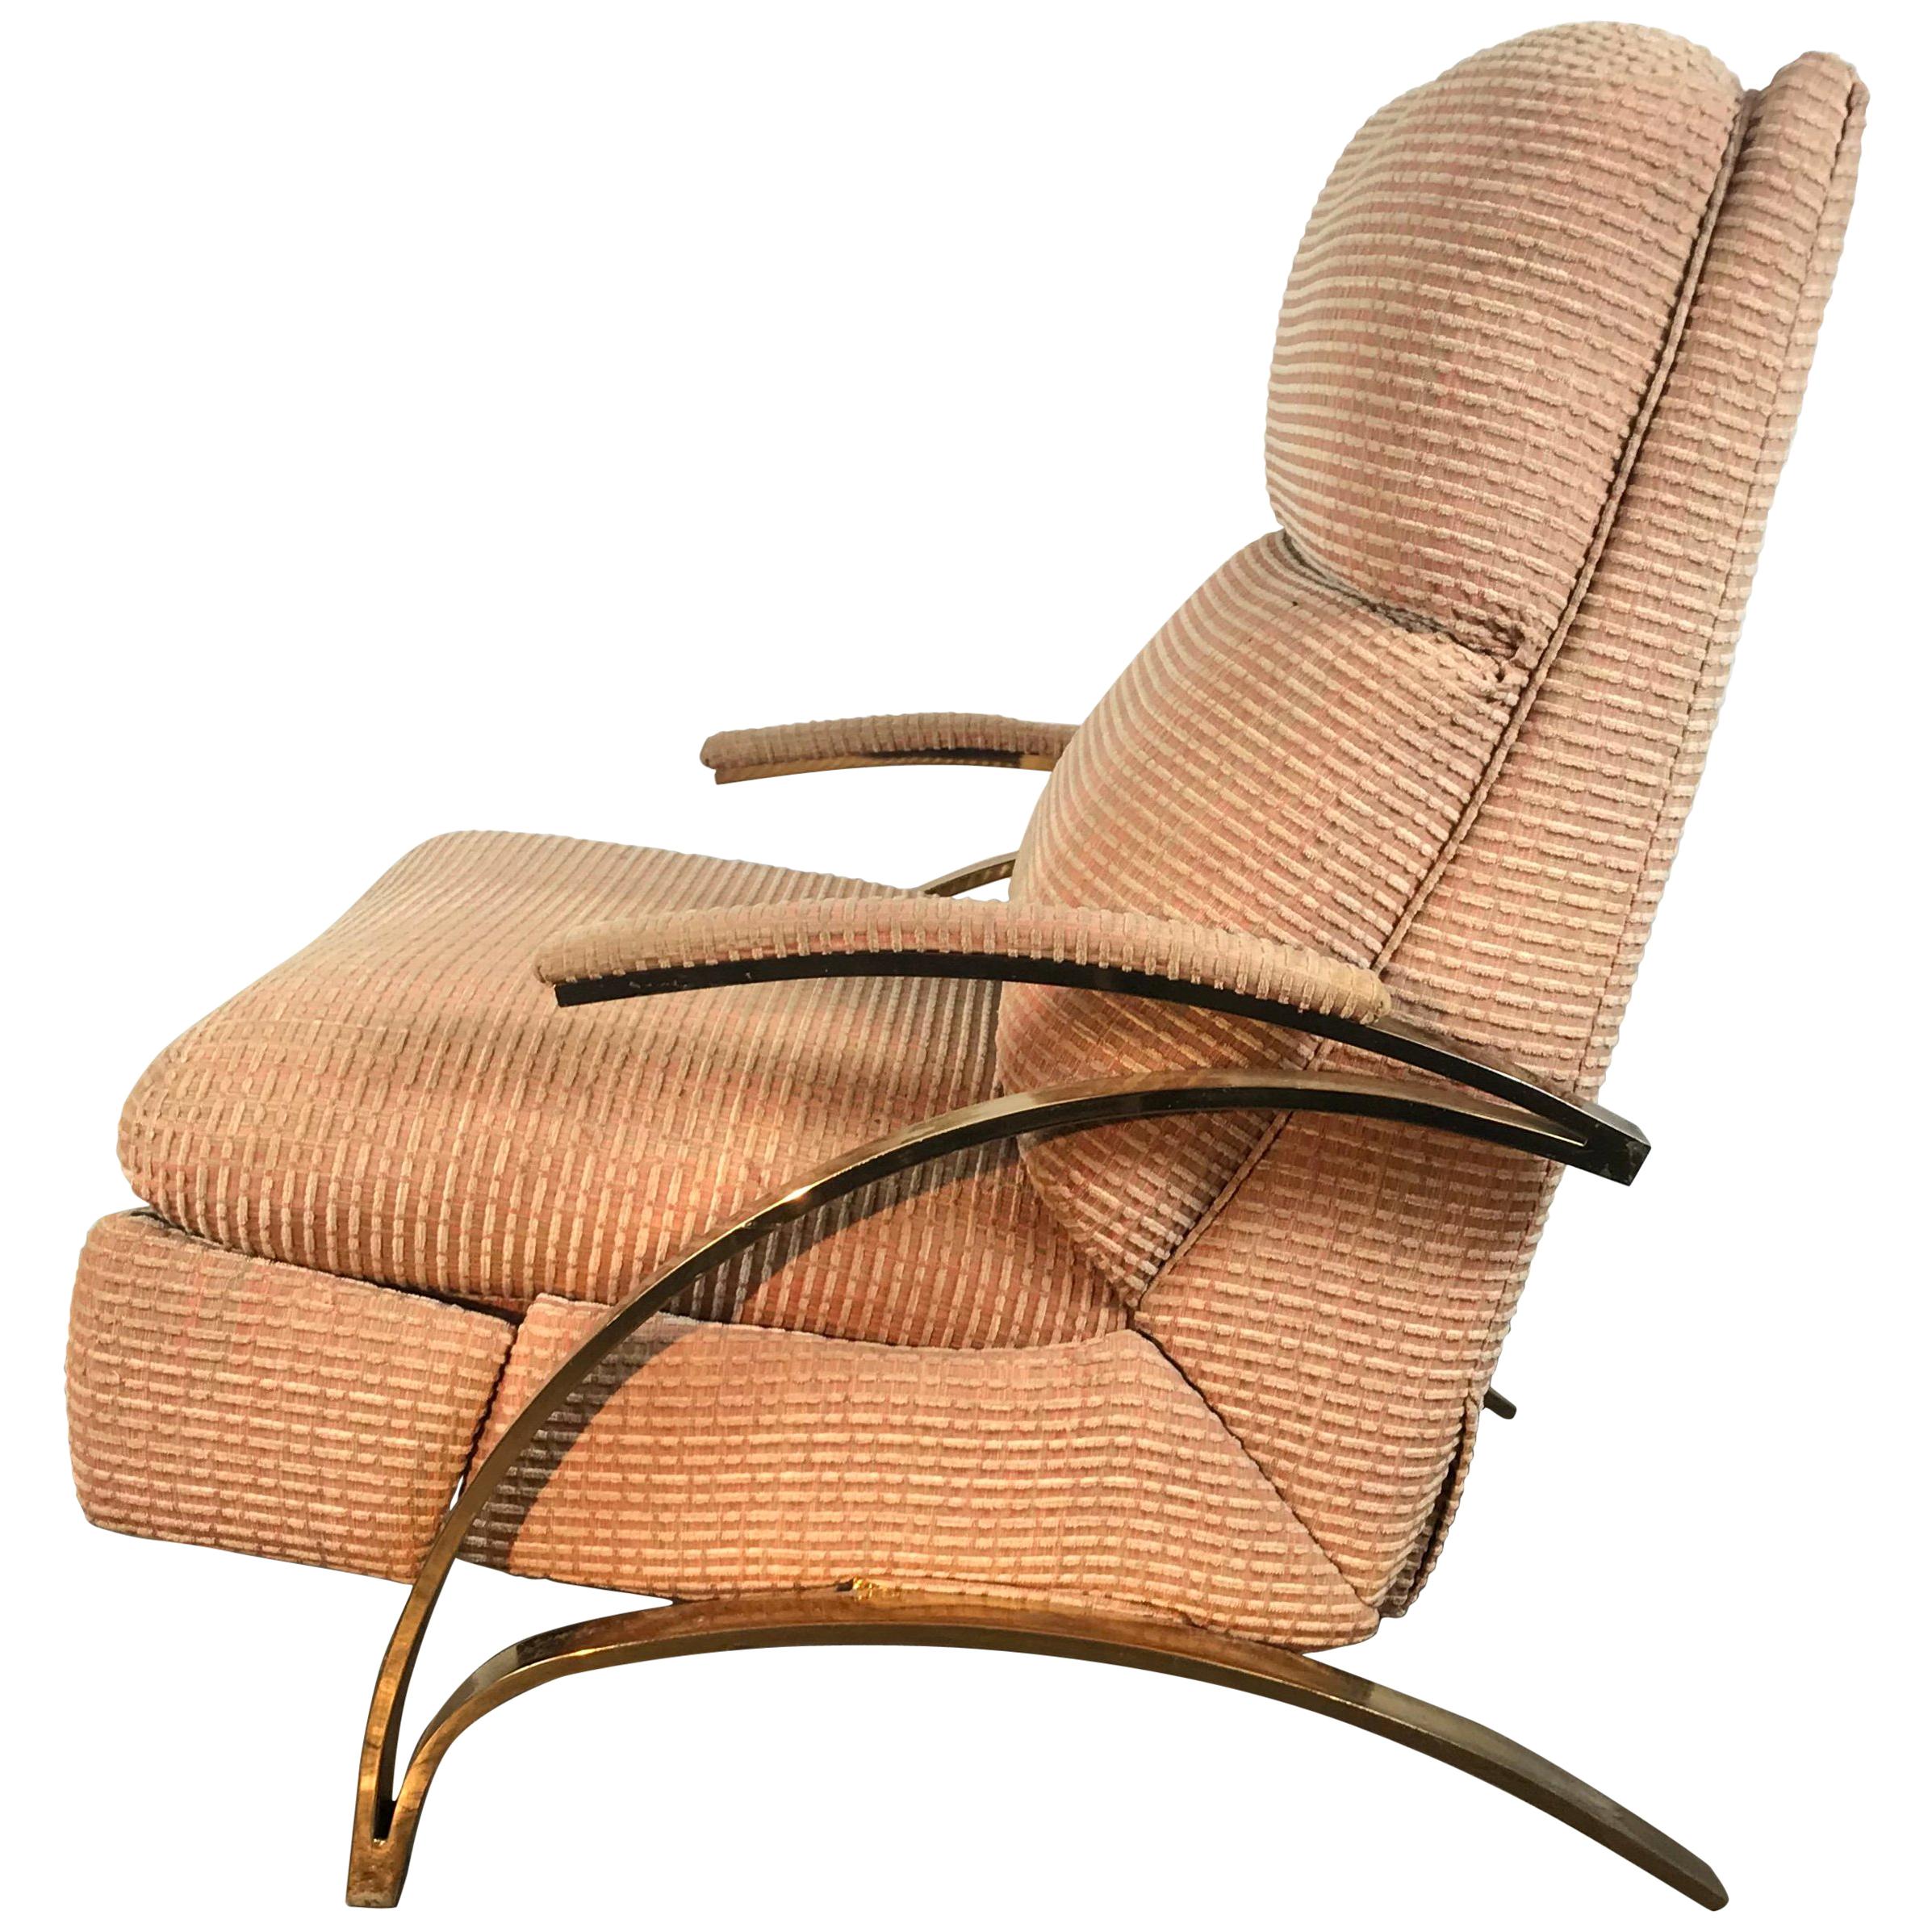 Stunning Brass Cantilever Recliner Lounge Chair, after Milo Baughman